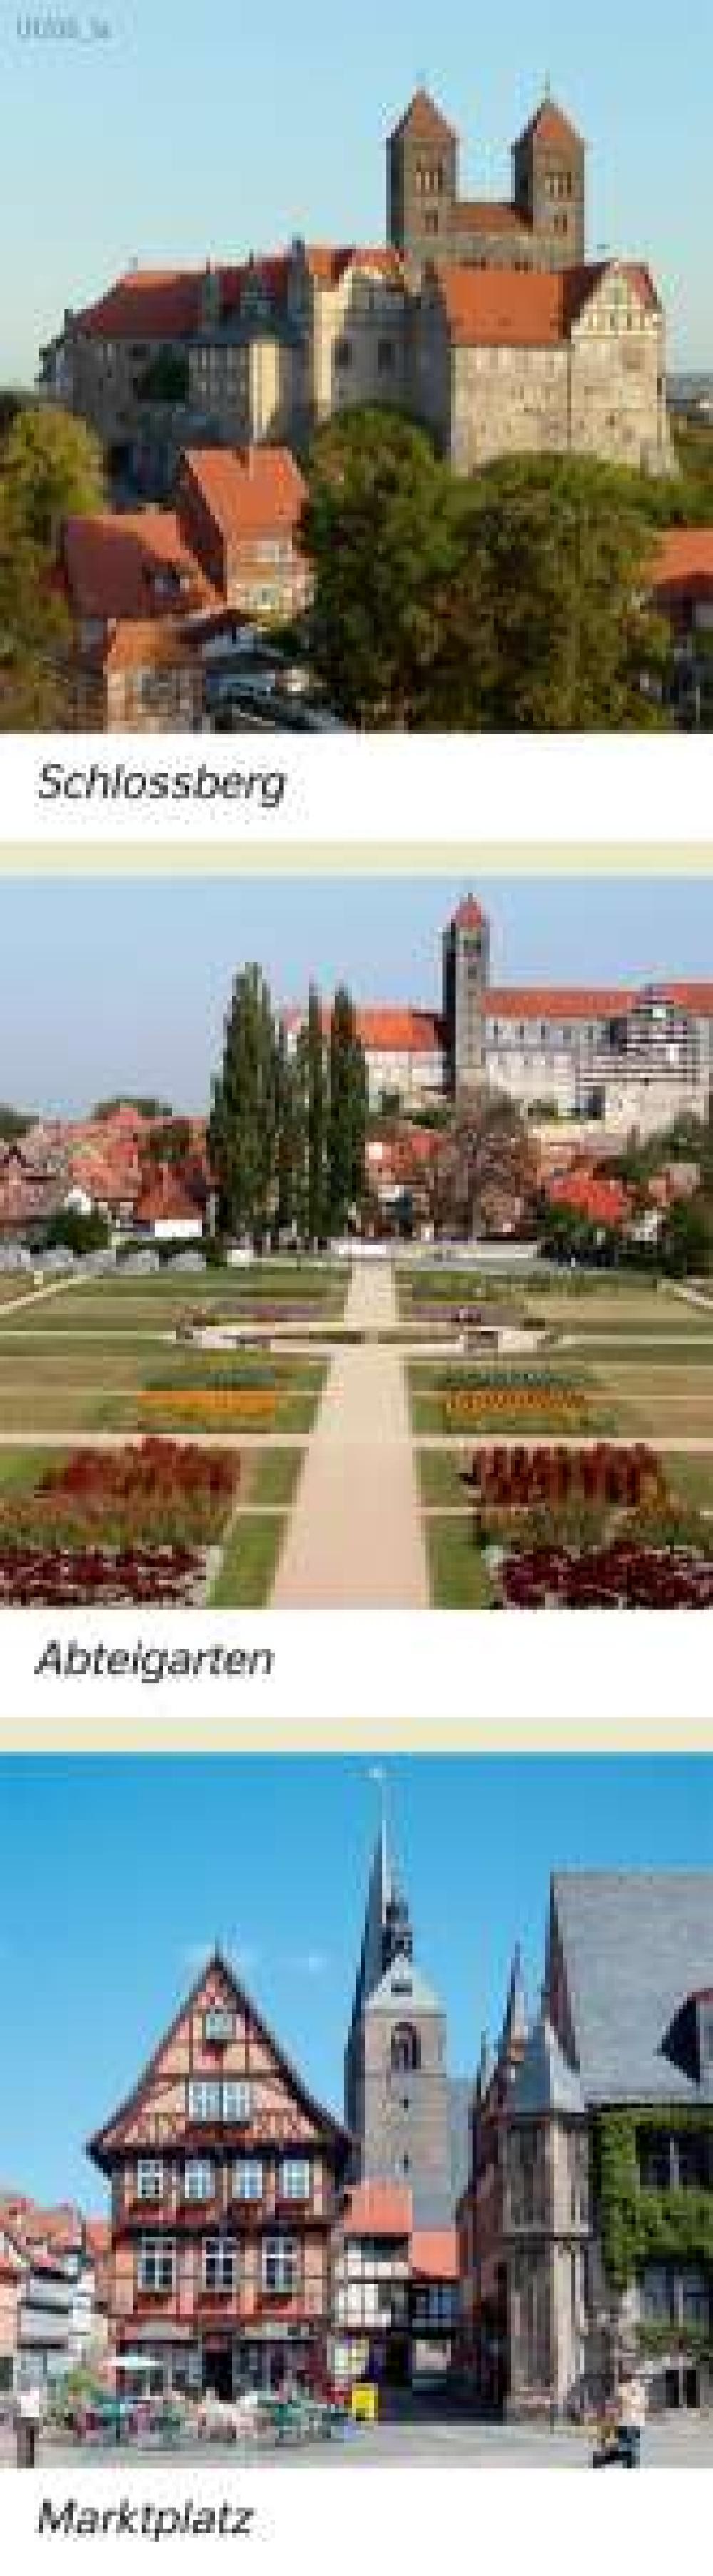 Quedlinburg Schlossbergabteigartenmarktplatz 978 3 14 100384 0 19 2 11 Diercke 2023 8490